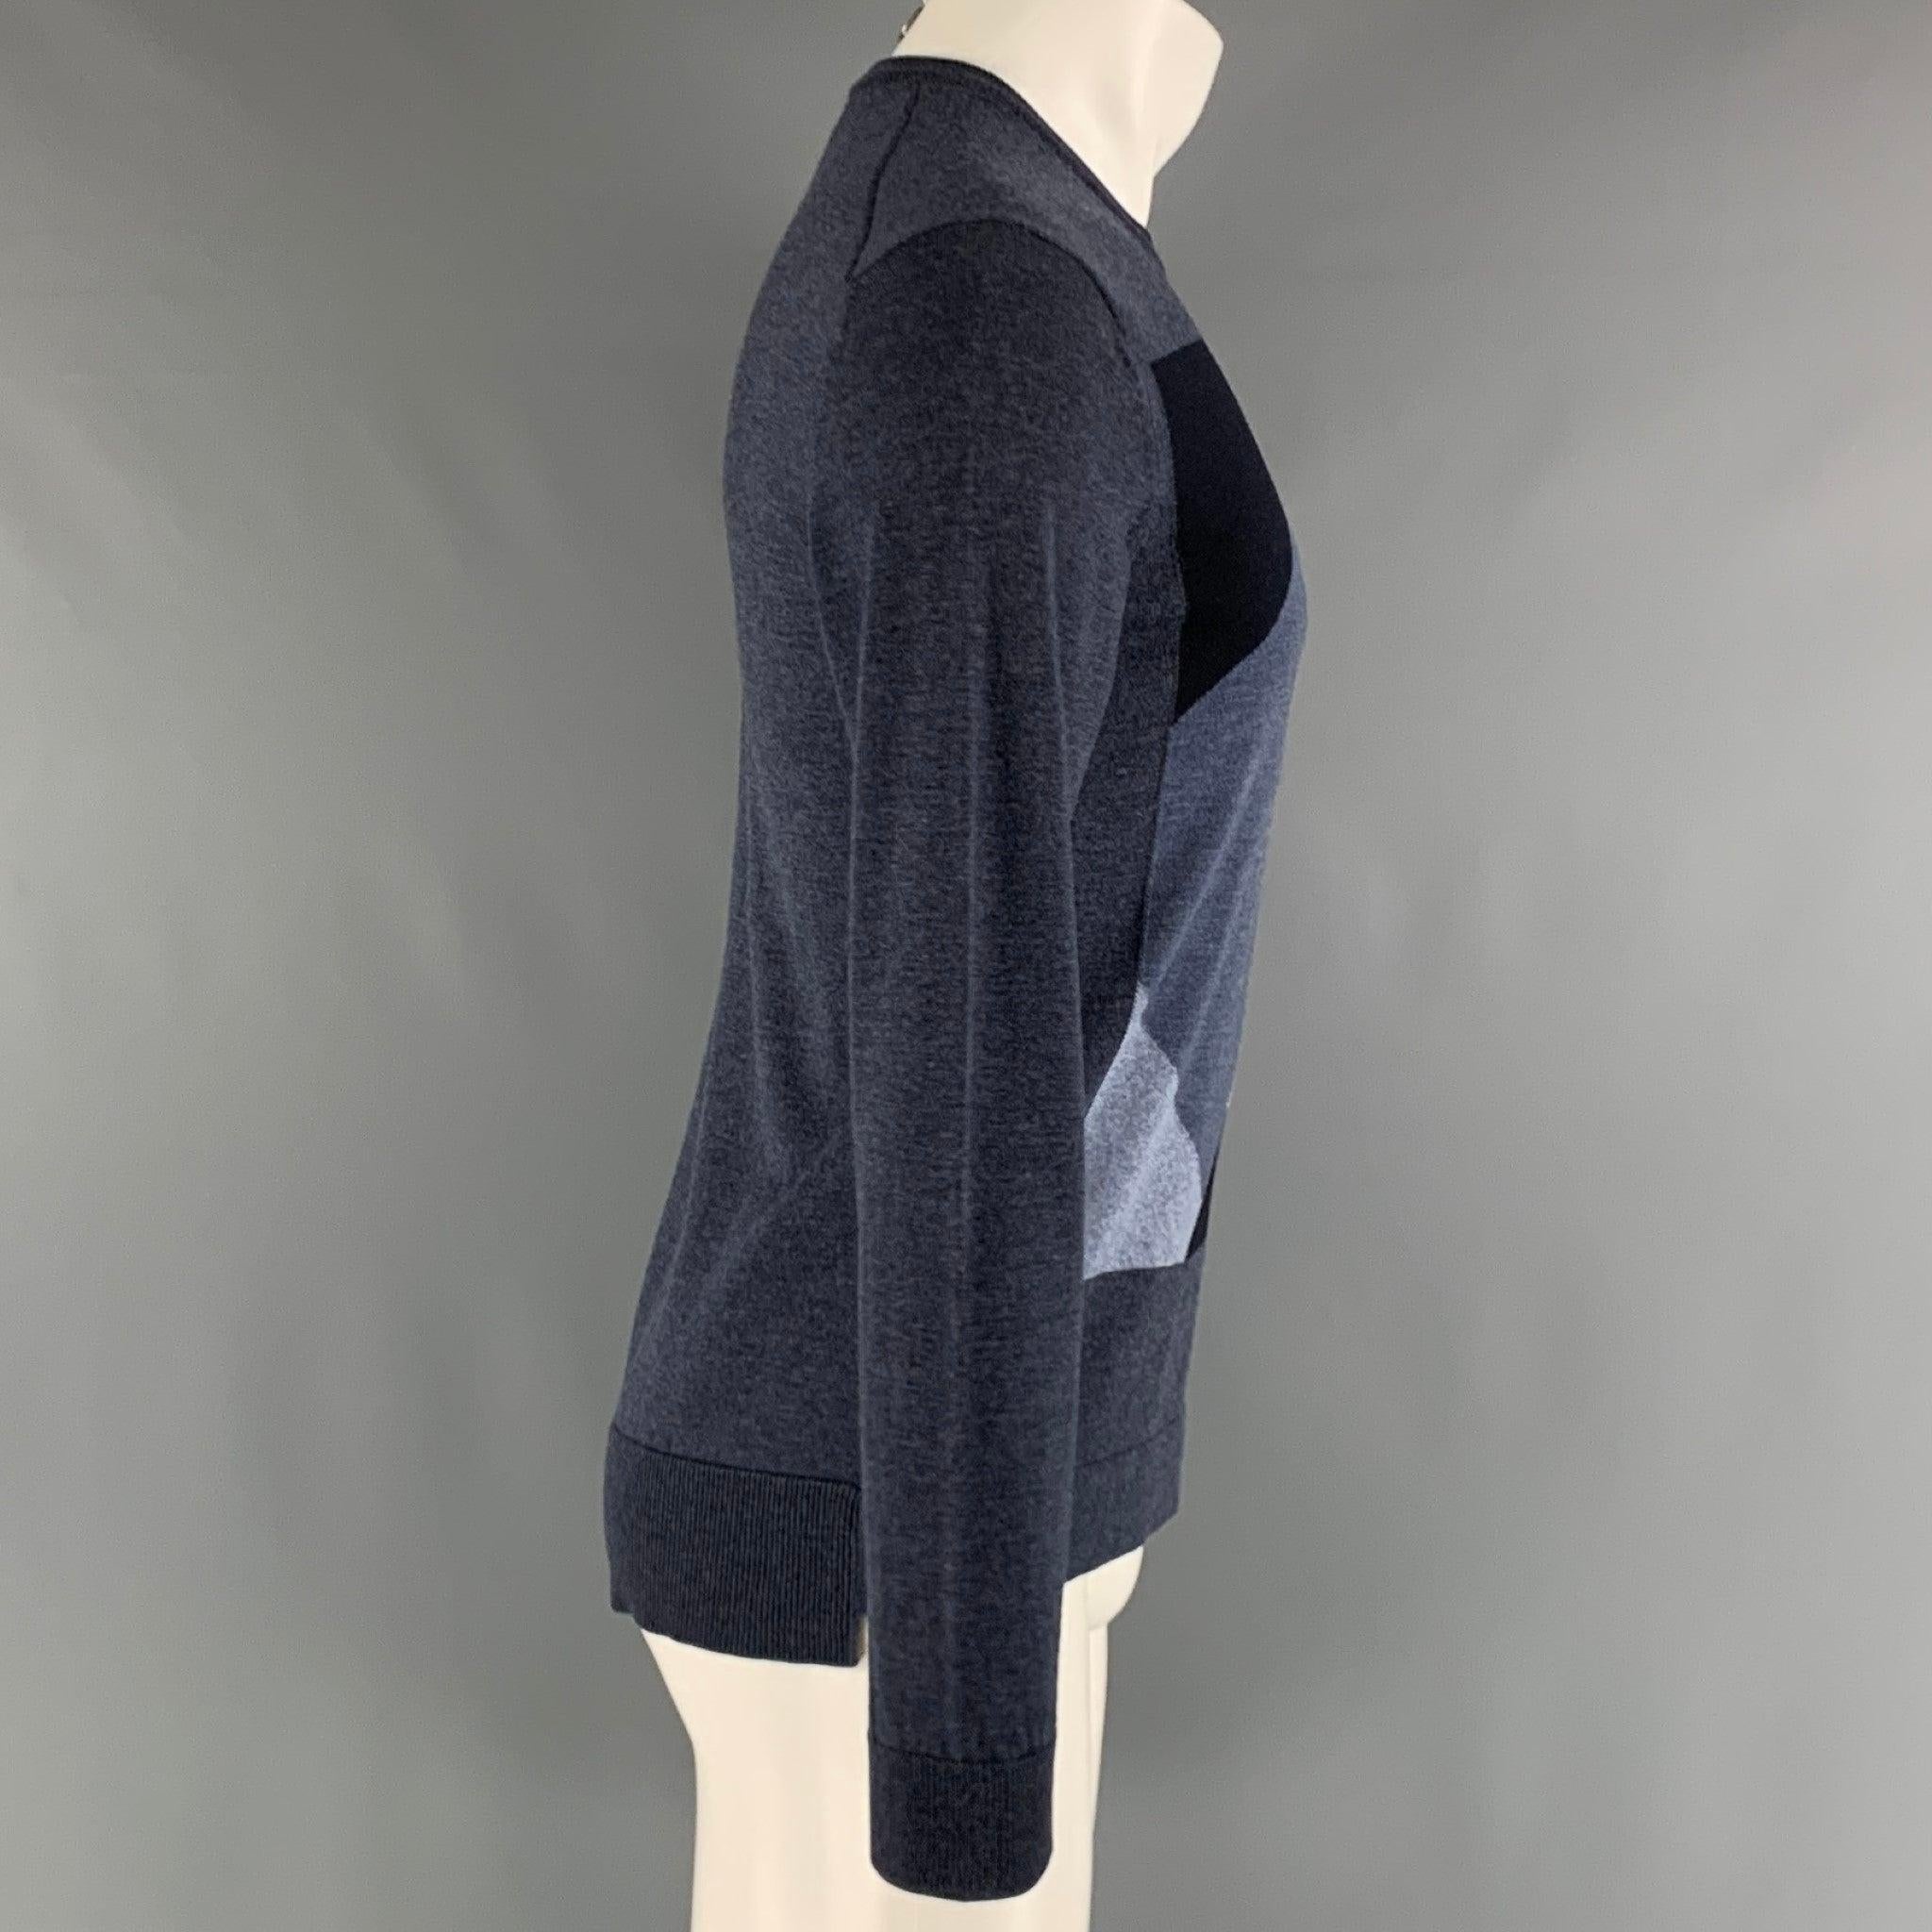 Ce pull-over EMPORIO ARMANI en tricot de laine gris et anthracite présente un style color block, un panneau arrière plus long, un ourlet côtelé et une encolure ras du cou. Excellent état d'origine. 

Marqué :   S 

Mesures : 
 
Épaule : 18 pouces